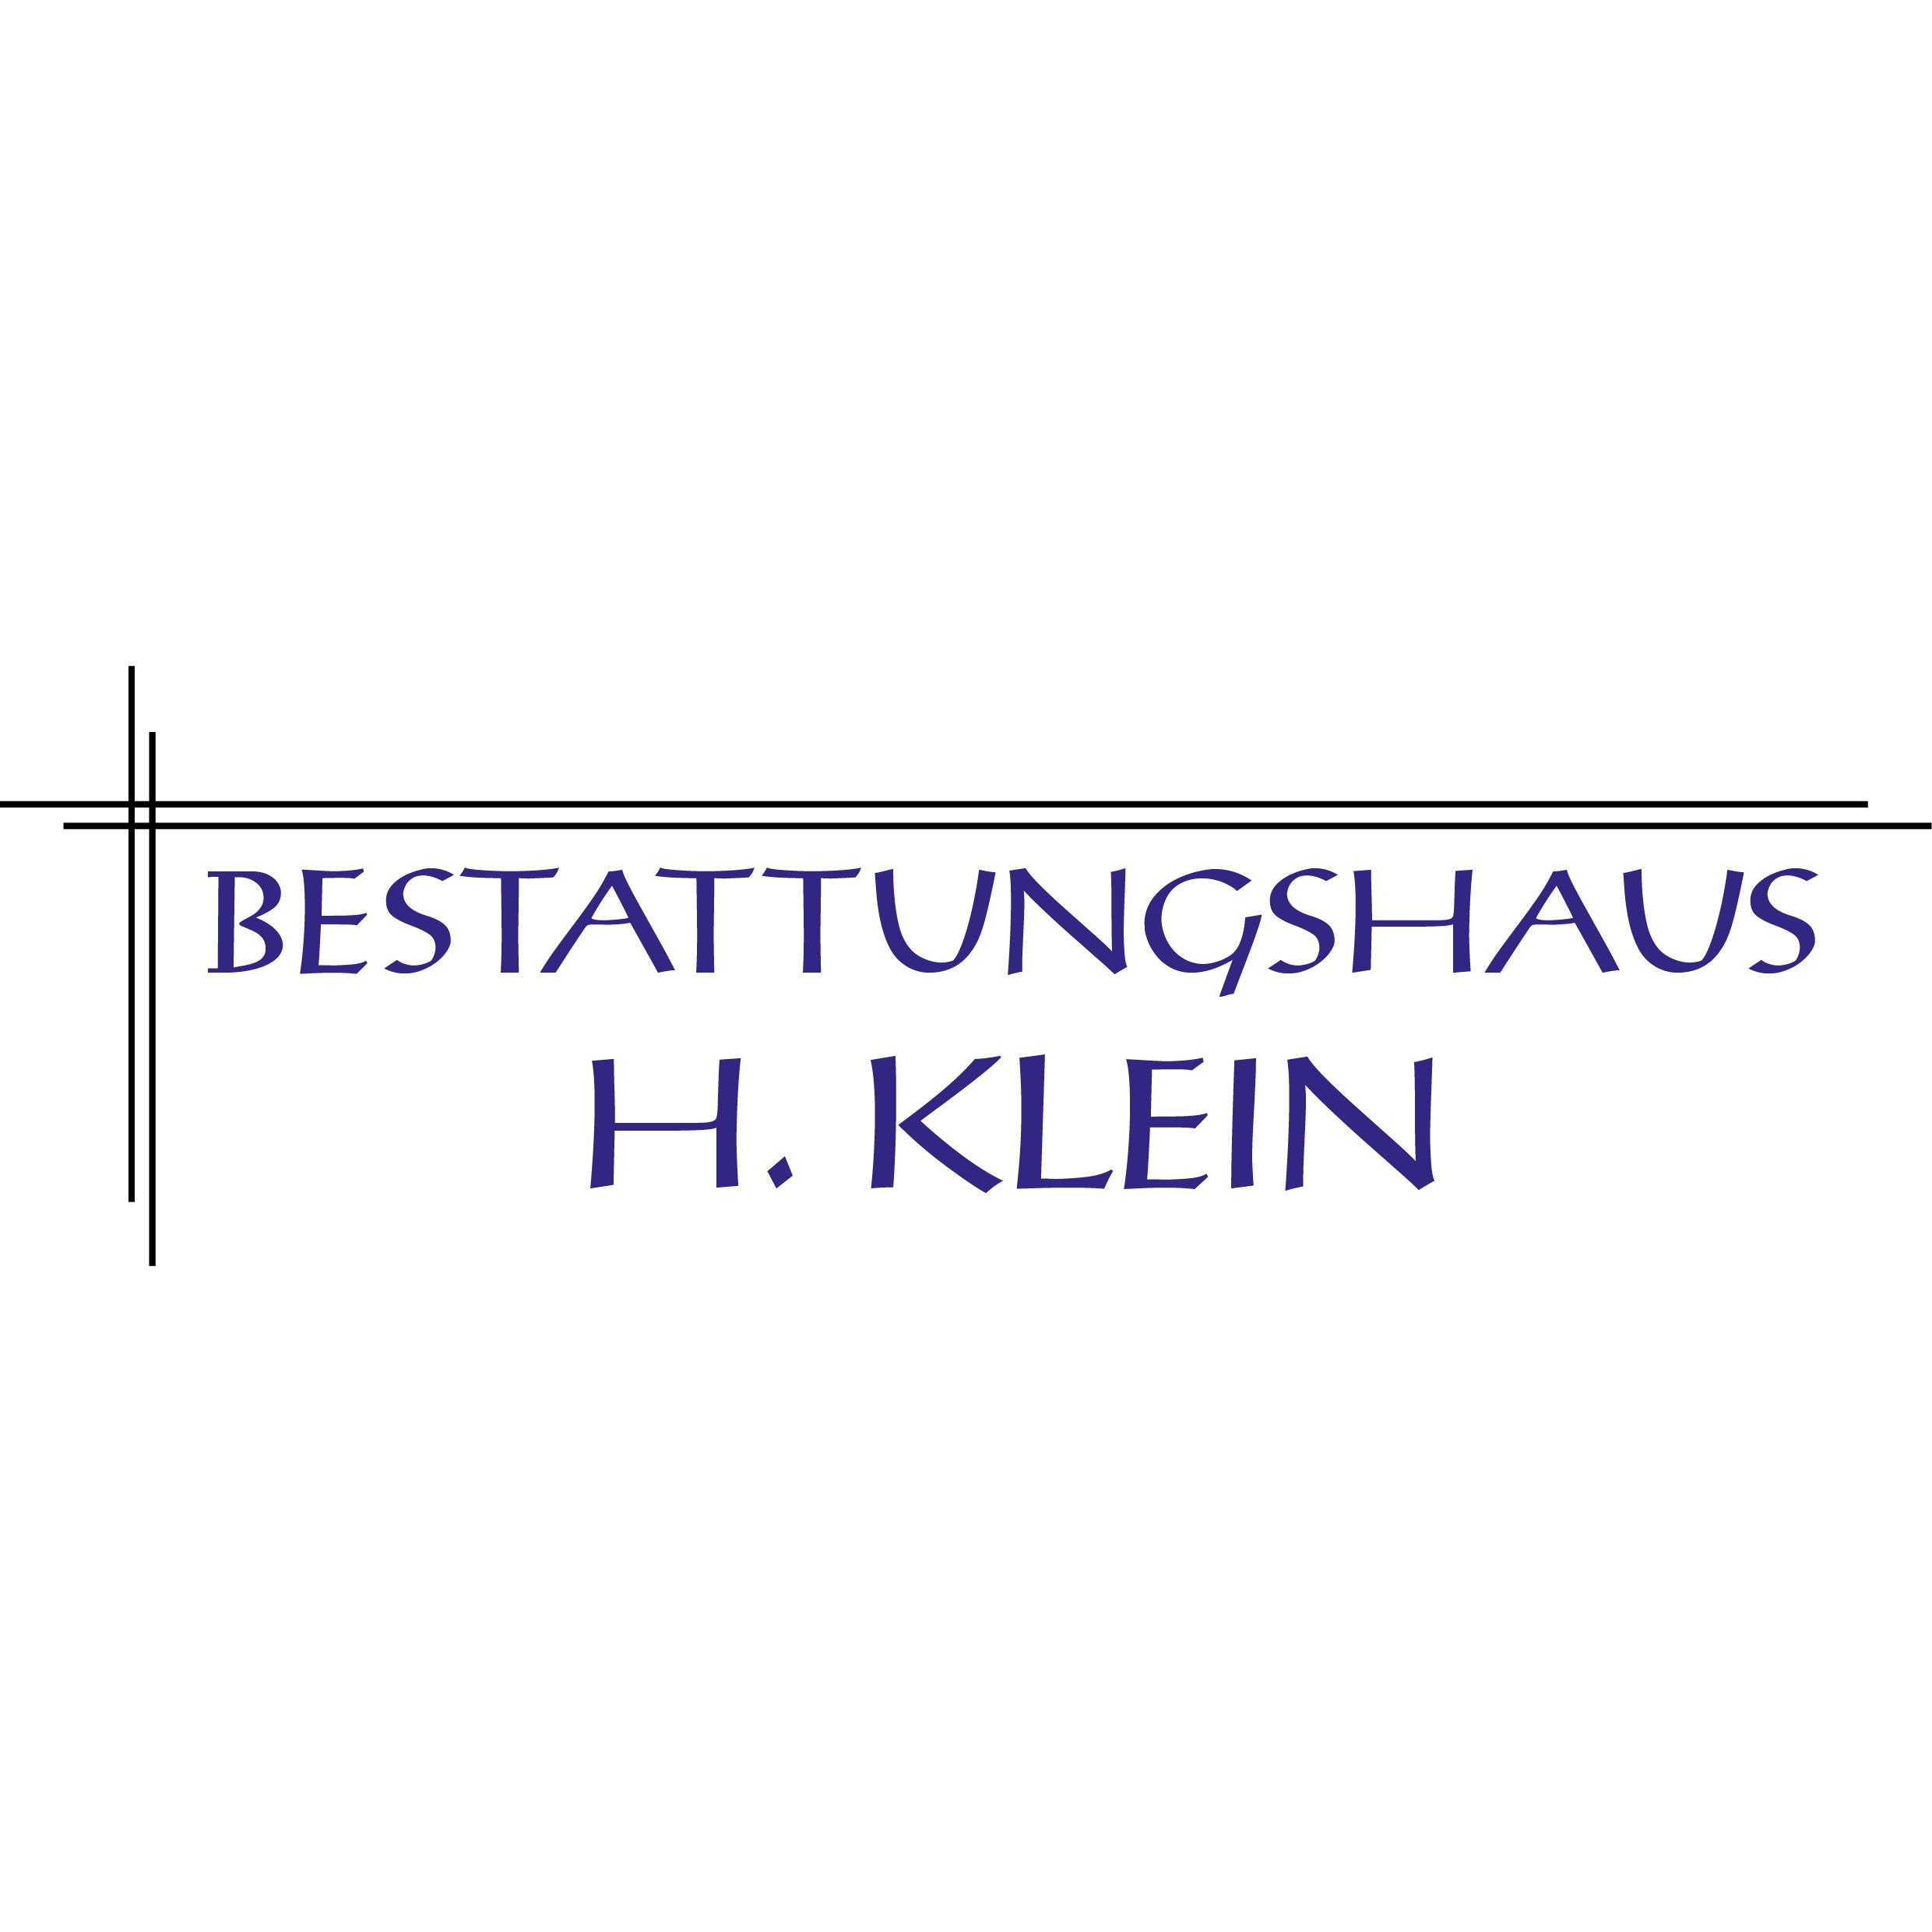 Bestattungshaus H. Klein in Rheinbach - Logo